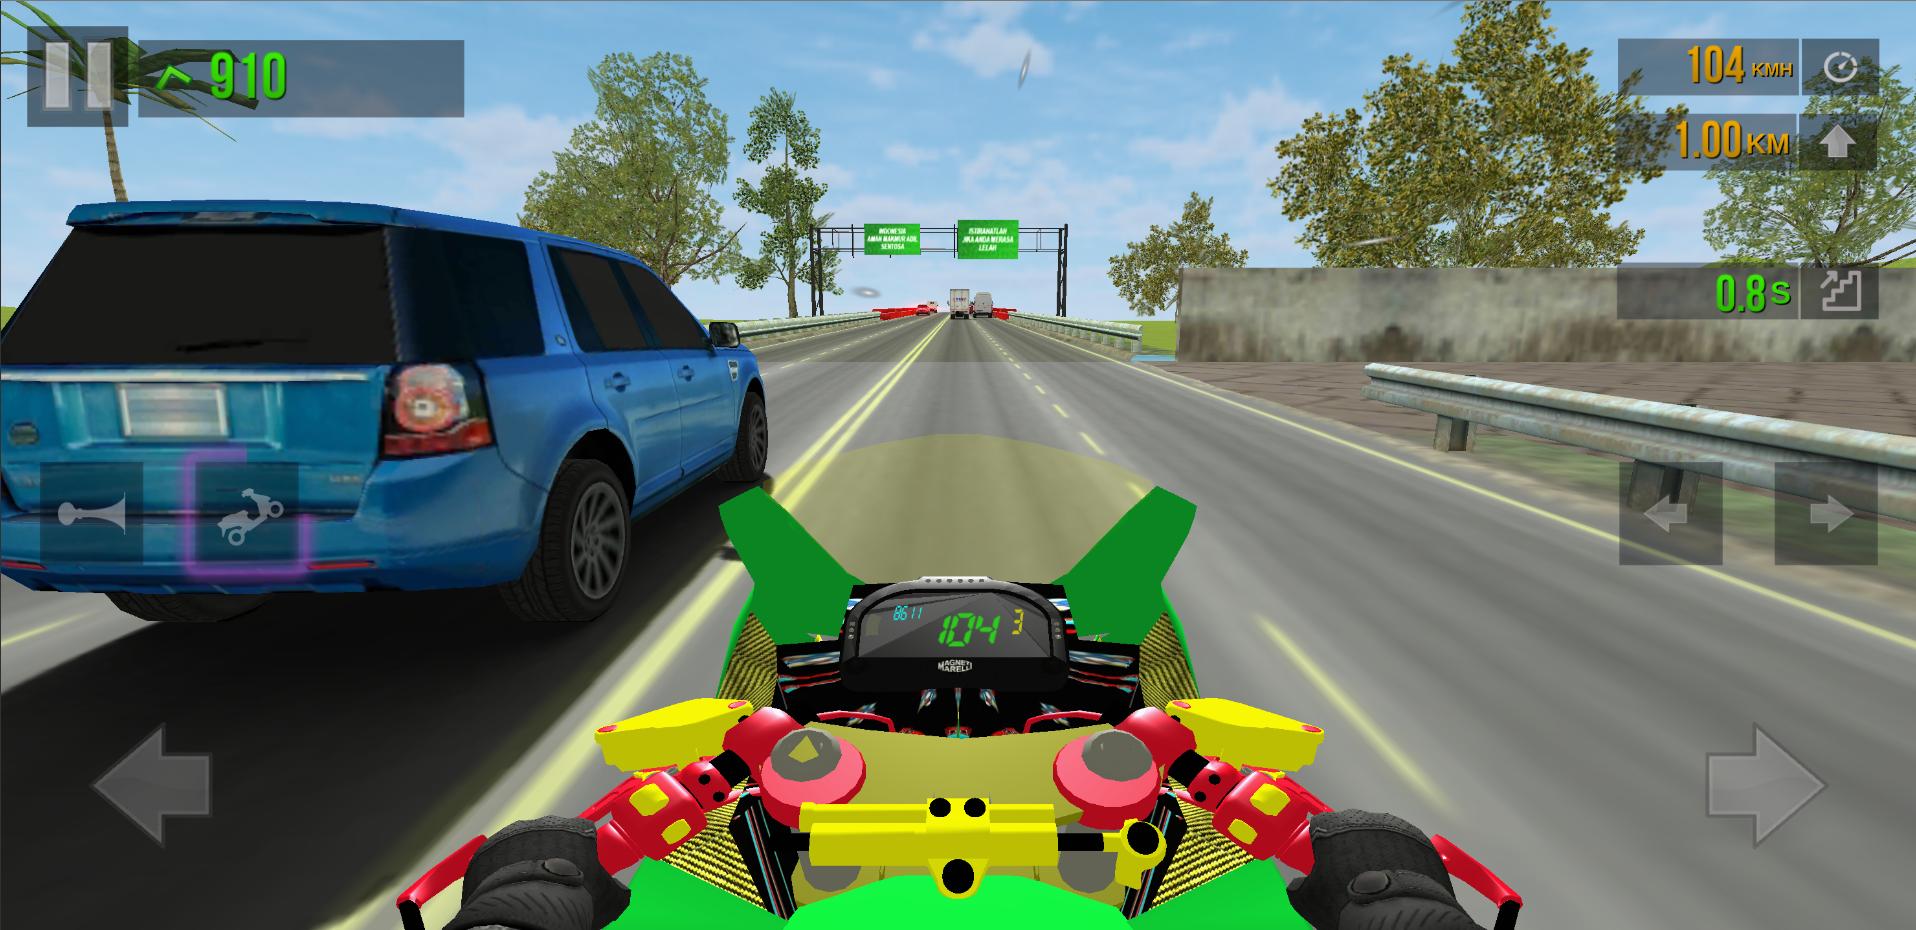 Tải game đua xe trên PC trên GameLoop để trải nghiệm nhịp độ vàng vọt của Drag Racing và Traffic Rider. Với đồ họa tuyệt đẹp, bạn sẽ được khám phá những pha rượt đua mãn nhãn trên màn hình PC của mình.